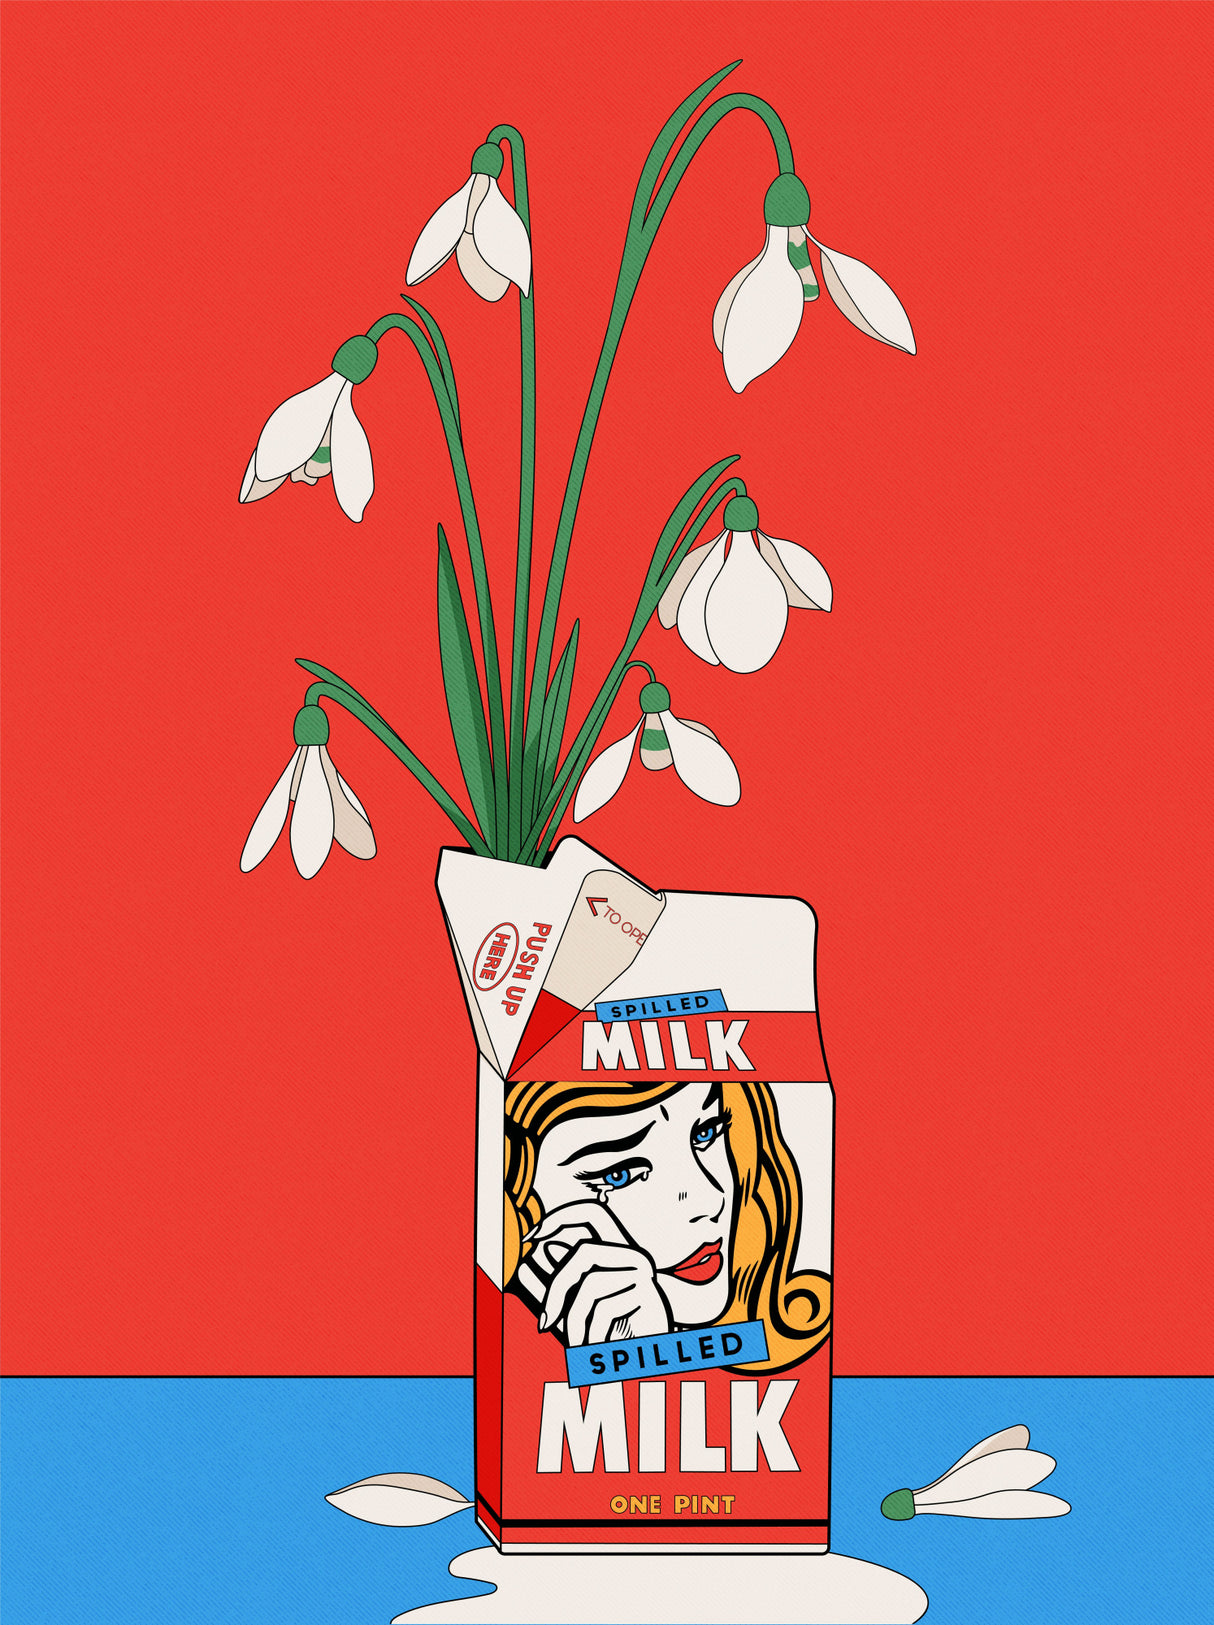 Snowdrops in Spilled Milk Carton Retro Illustration Poster och Canvastavla